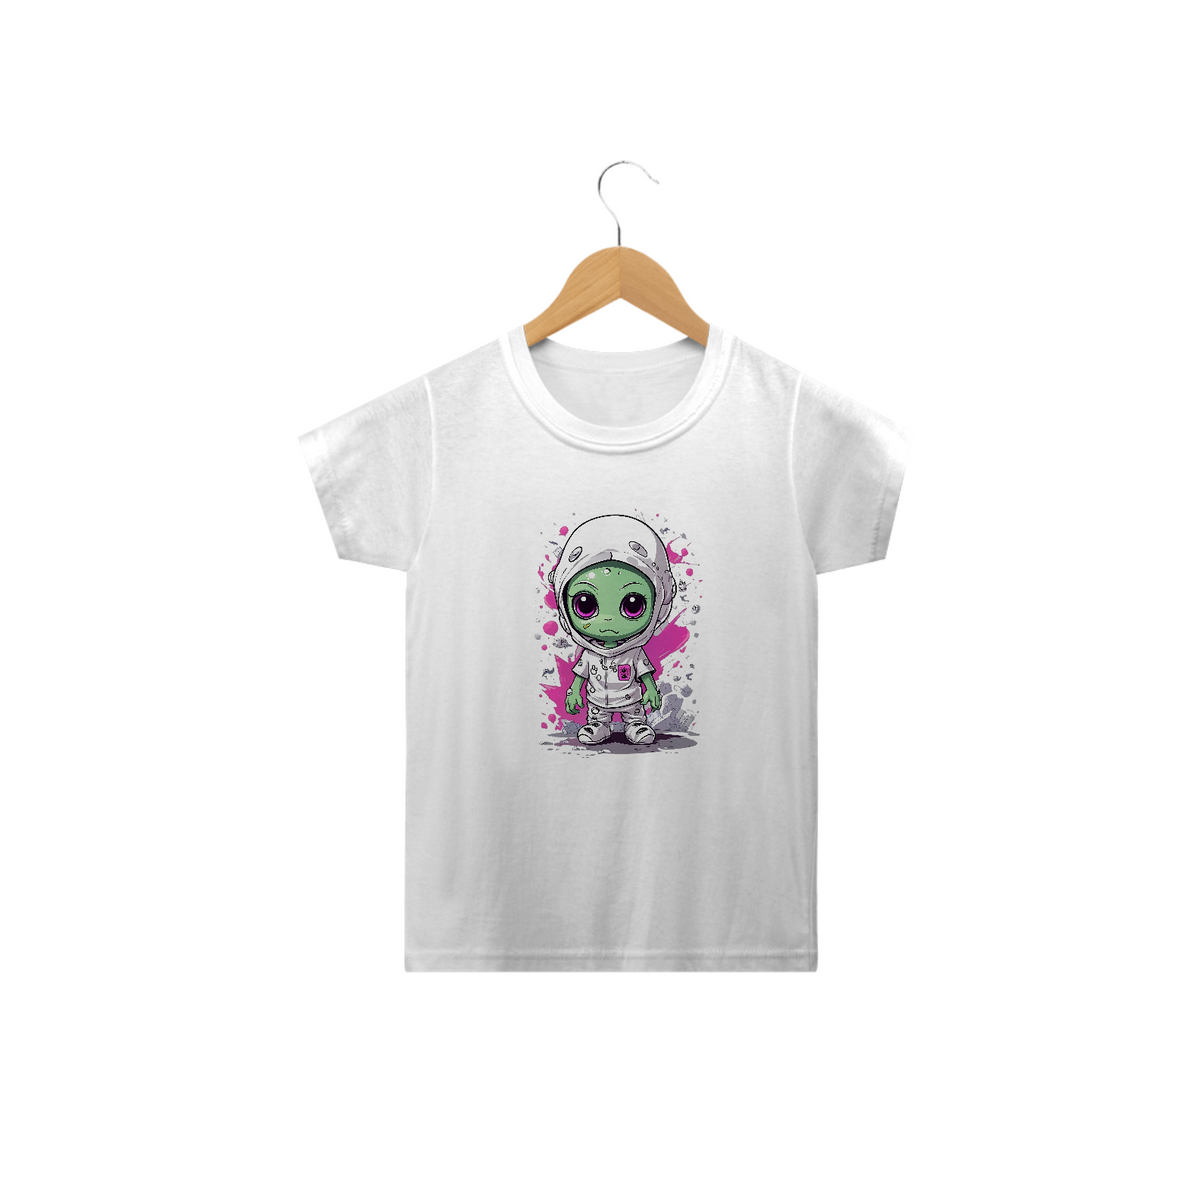 Nome do produto: Alien cute cartoon - camiseta Kids